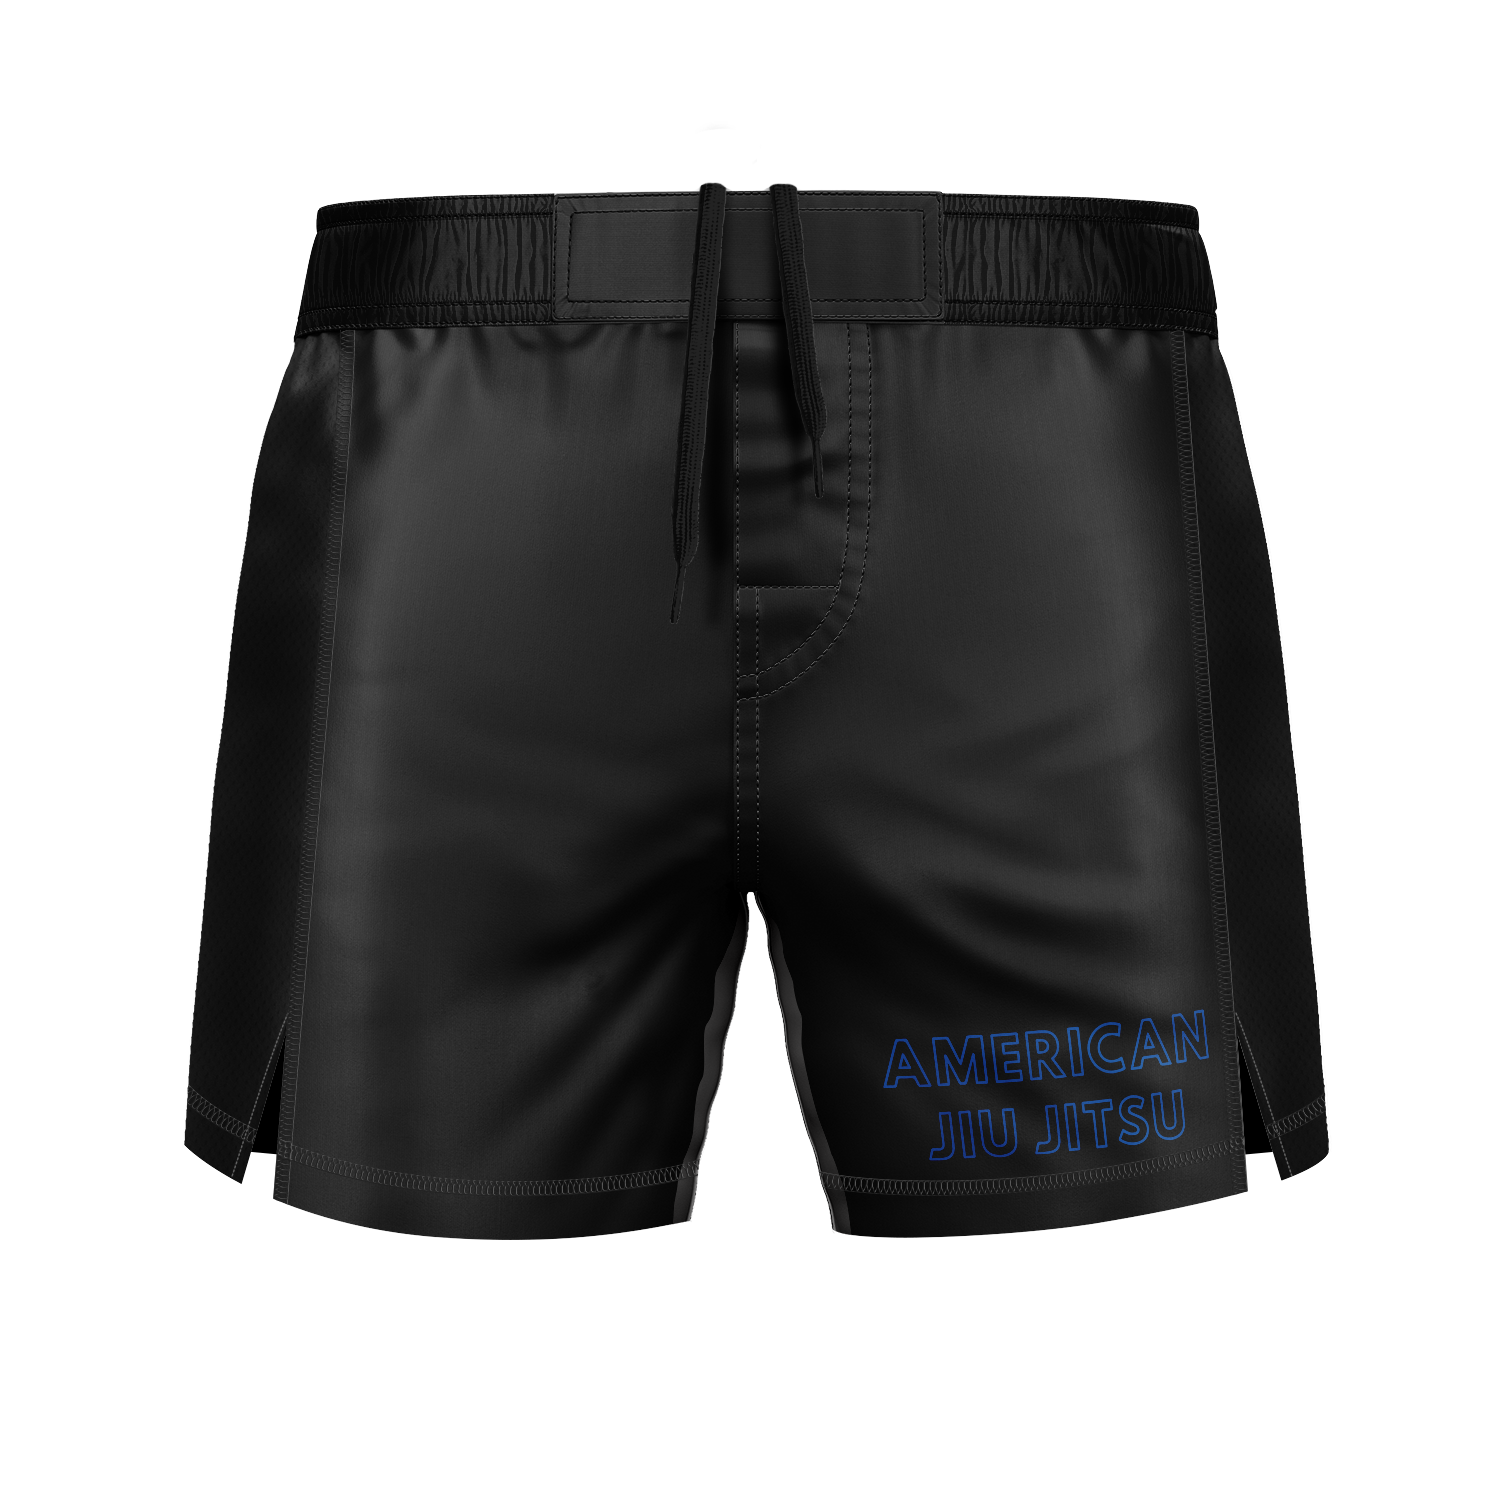 AJJ men's fight shorts The Staple, black and blue – CRUZ CMBT